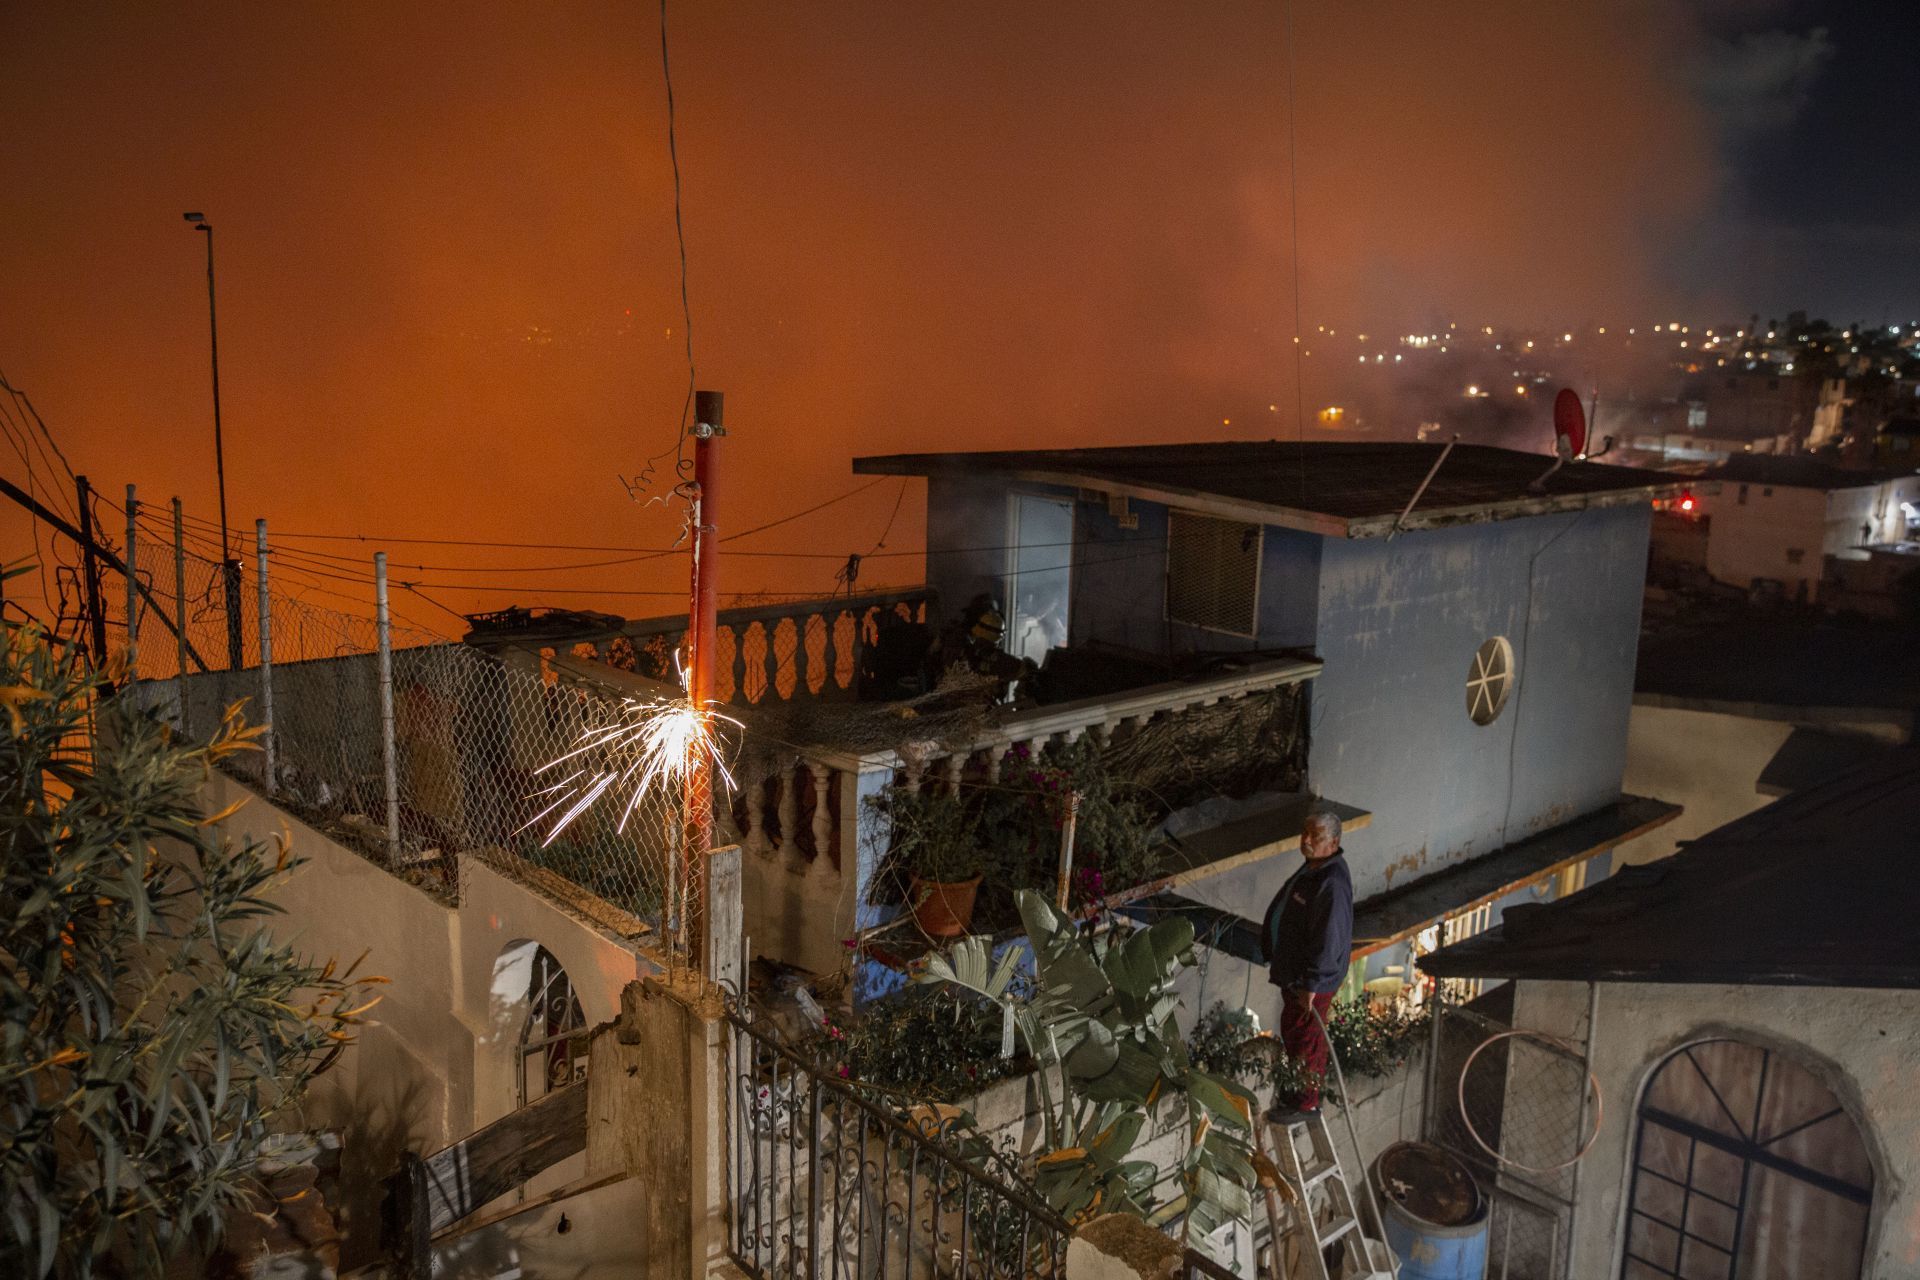 Y en Tampico: Dejan cargando un celular en la cama y provocan que se incendie la casa